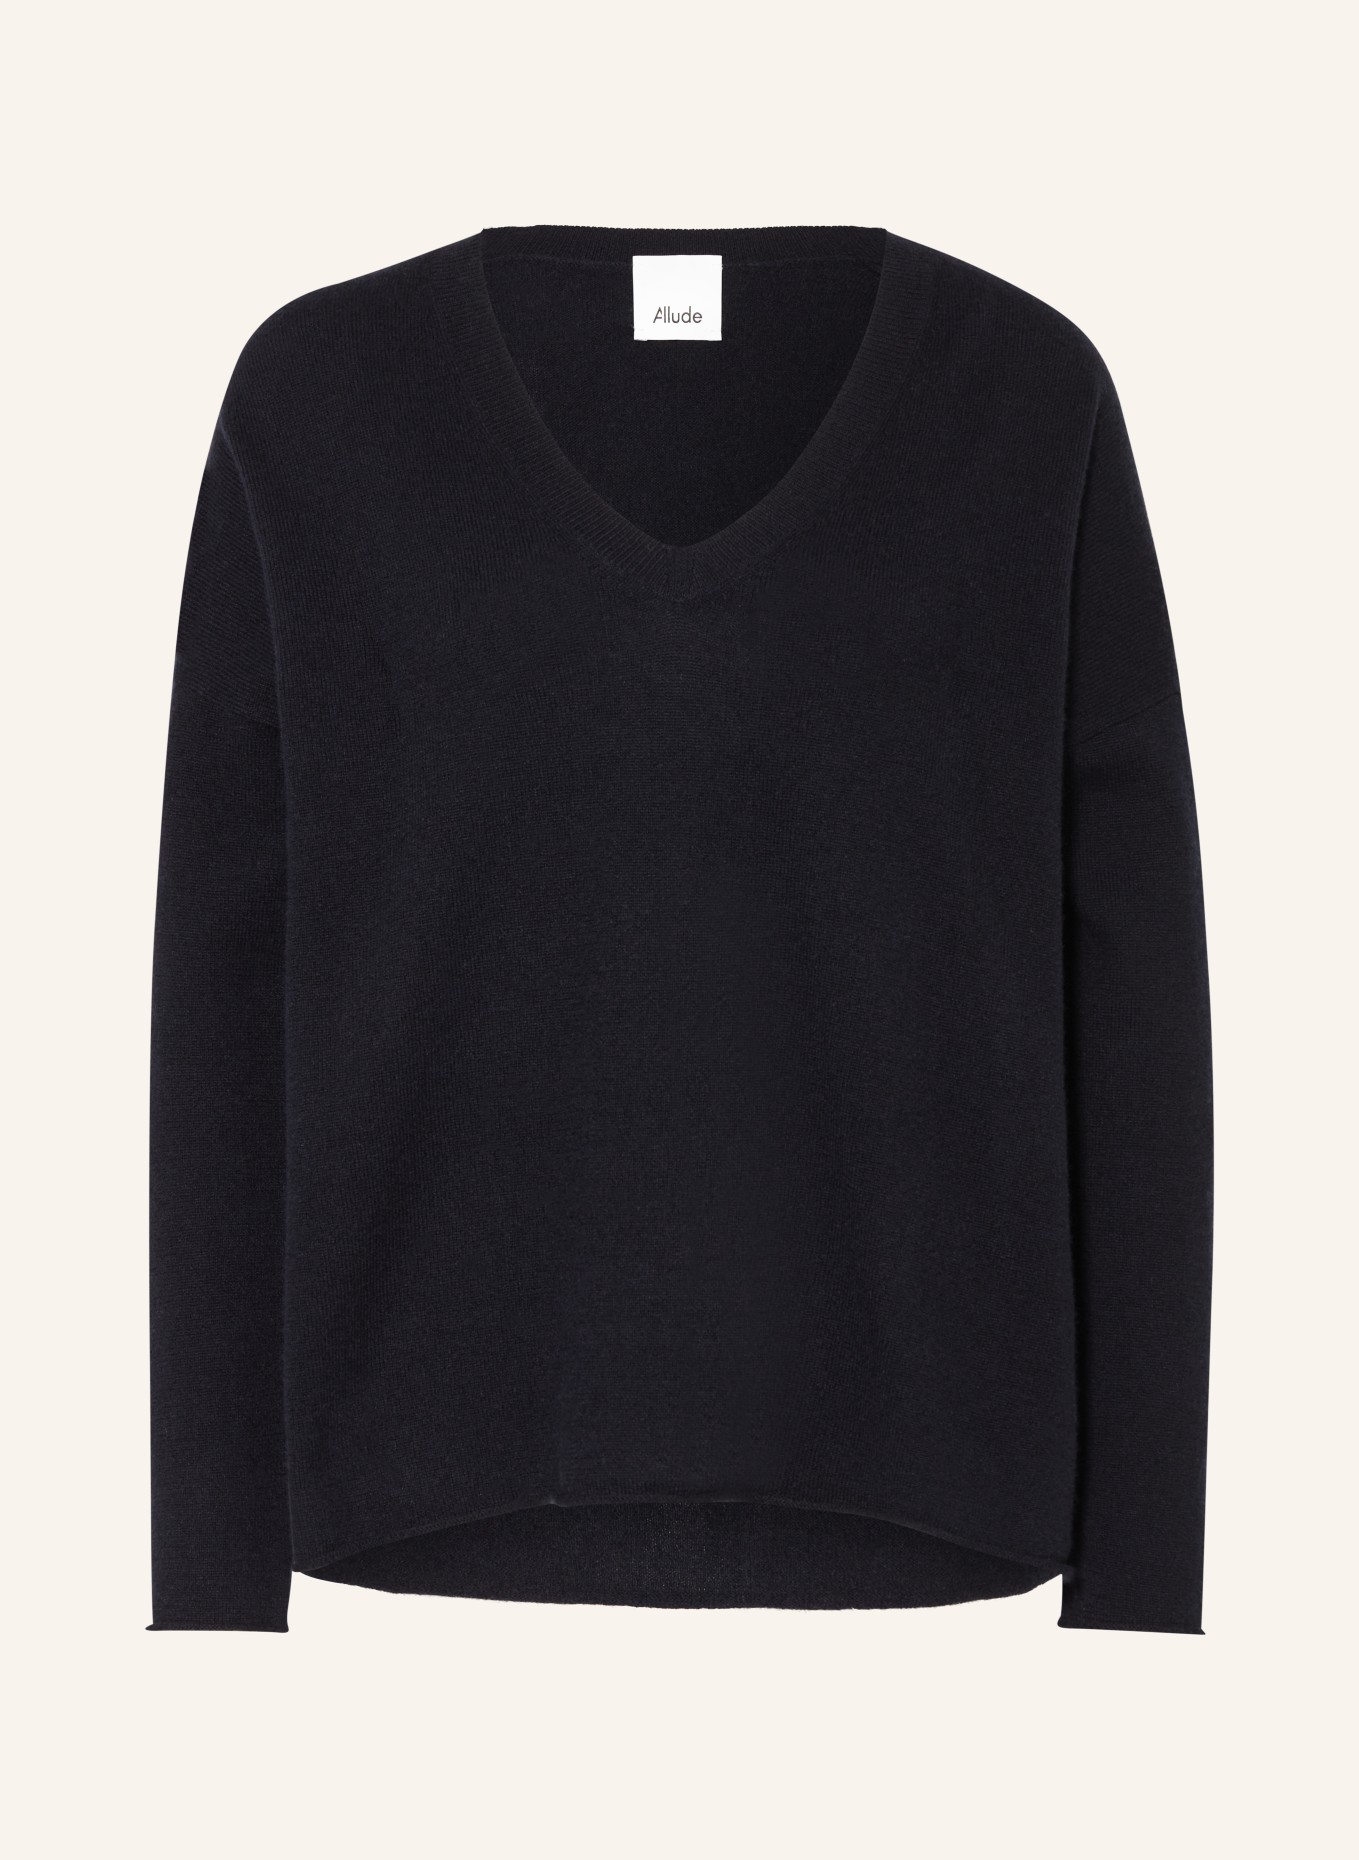 ALLUDE Cashmere-Pullover, Farbe: SCHWARZ (Bild 1)